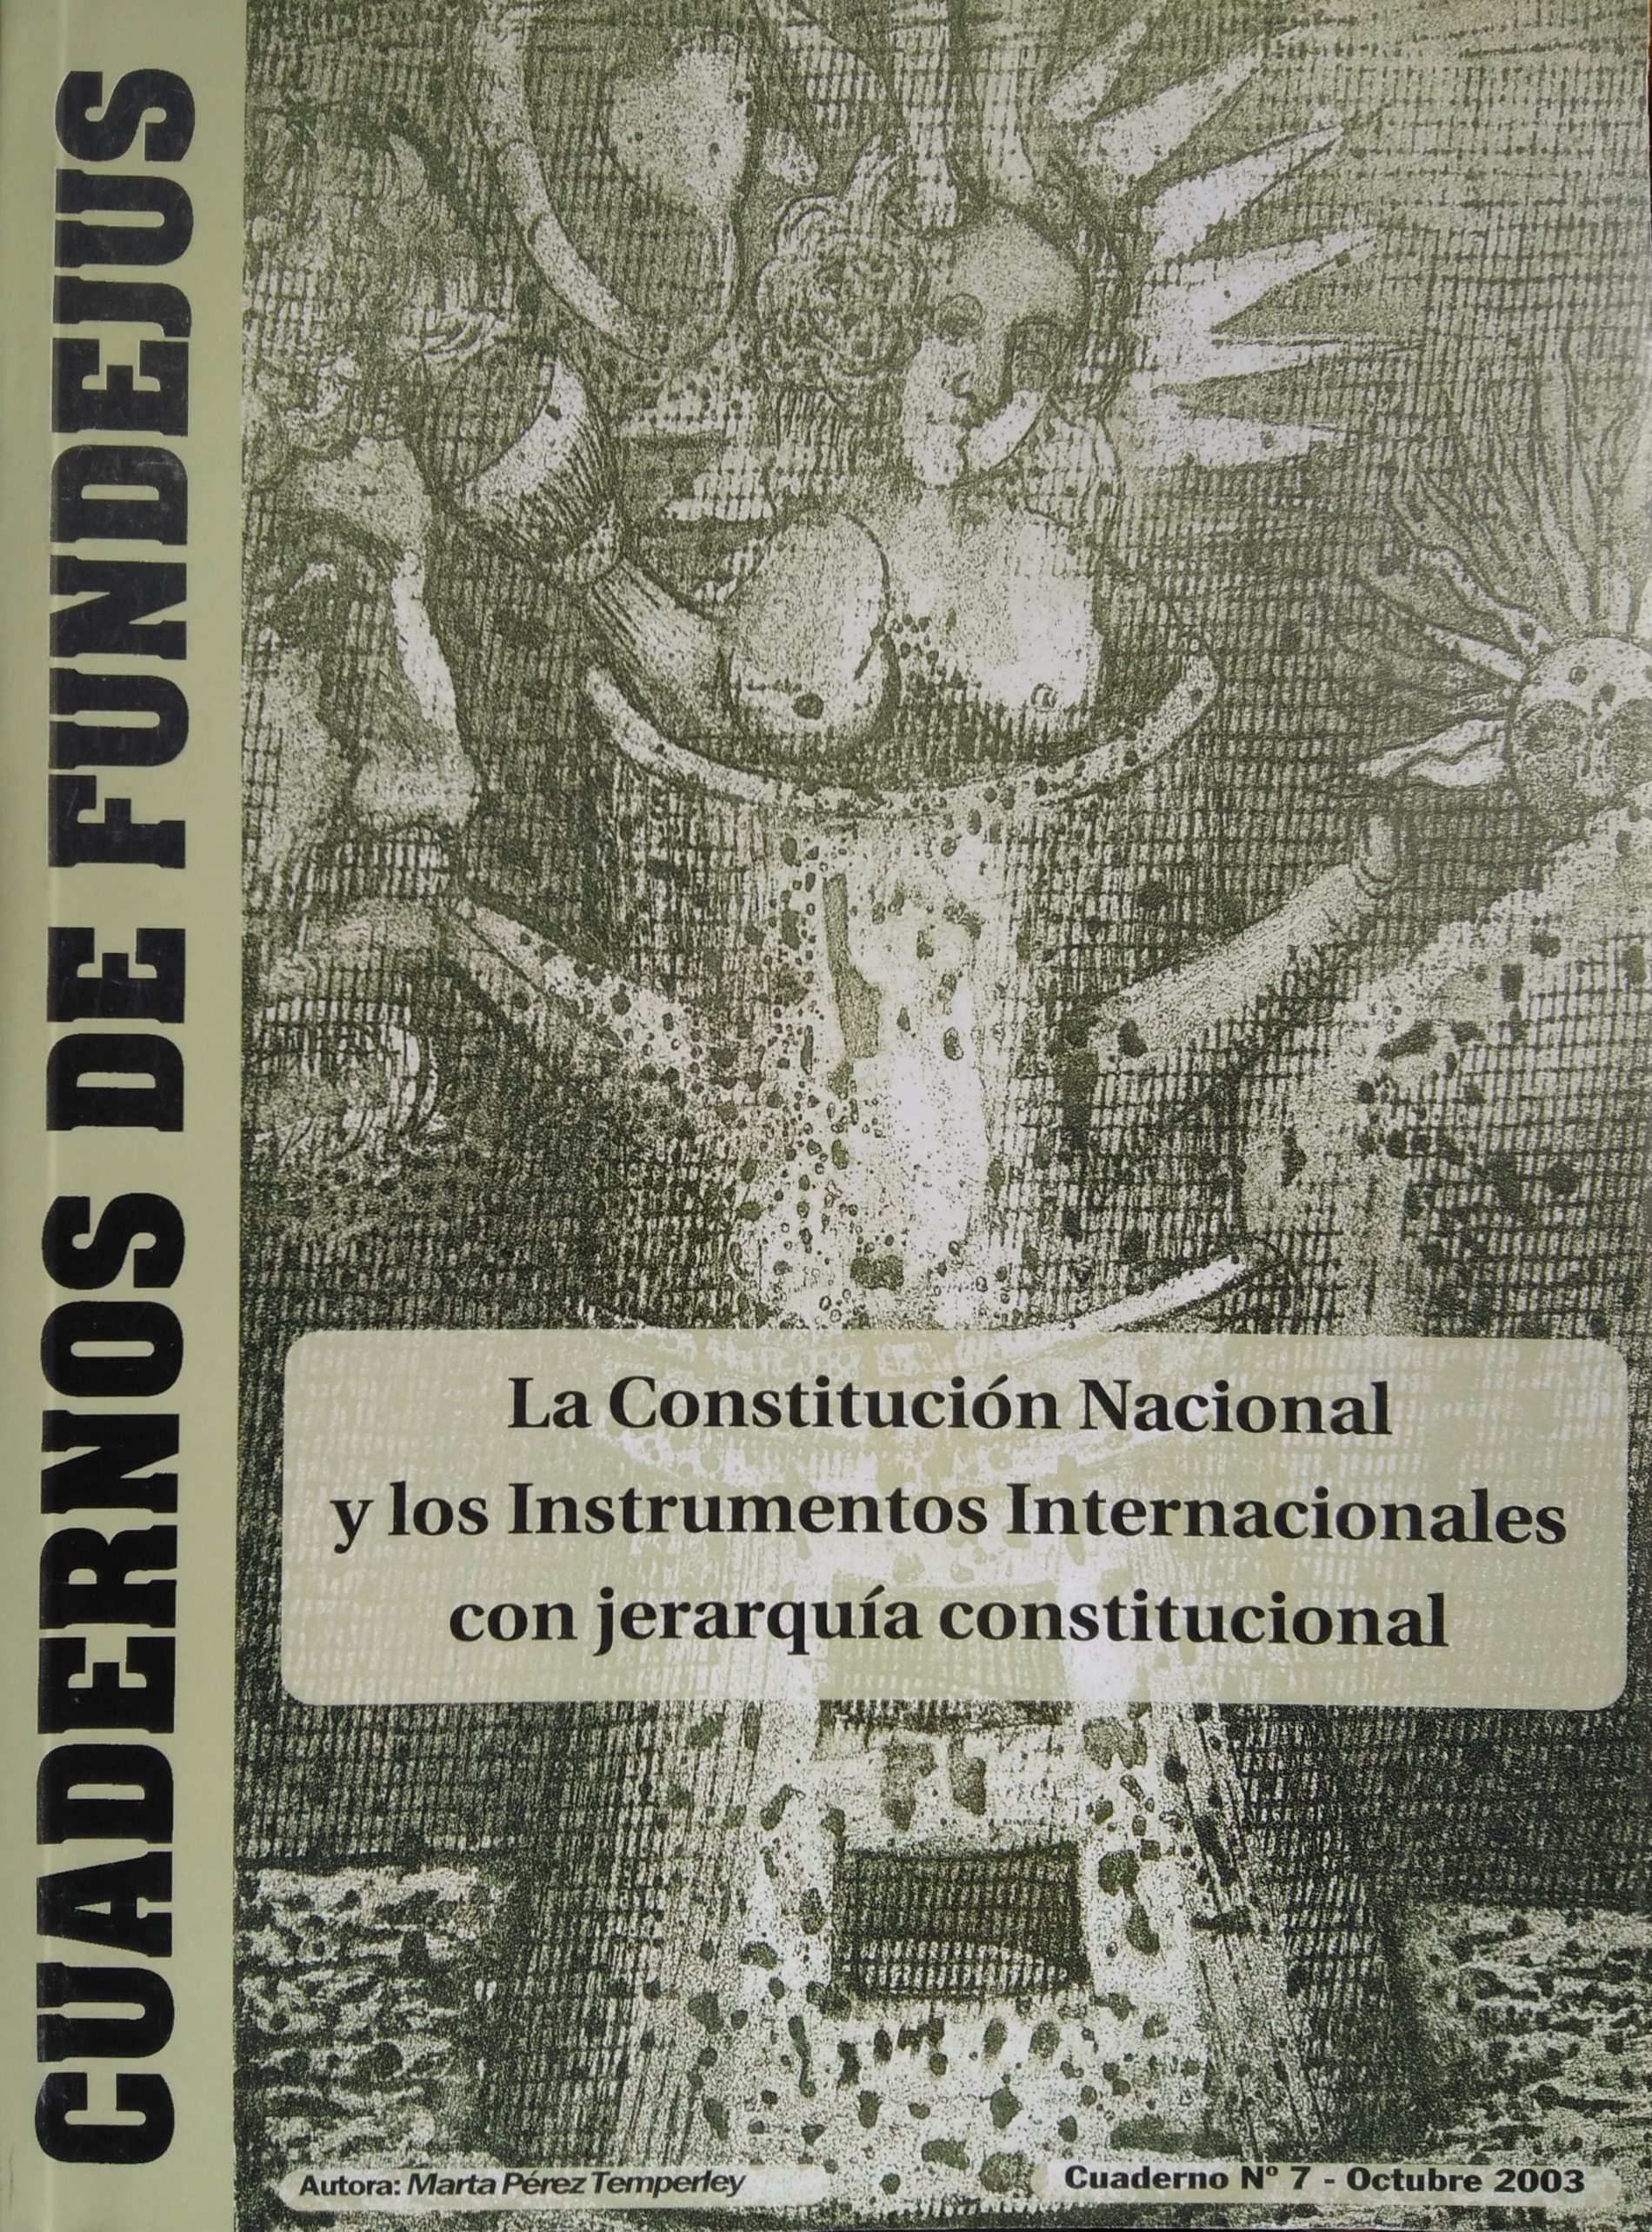 CUADERNO 7: “La Constitución Nacional y los Instrumentos Internacionales con jerarquía constitucional”